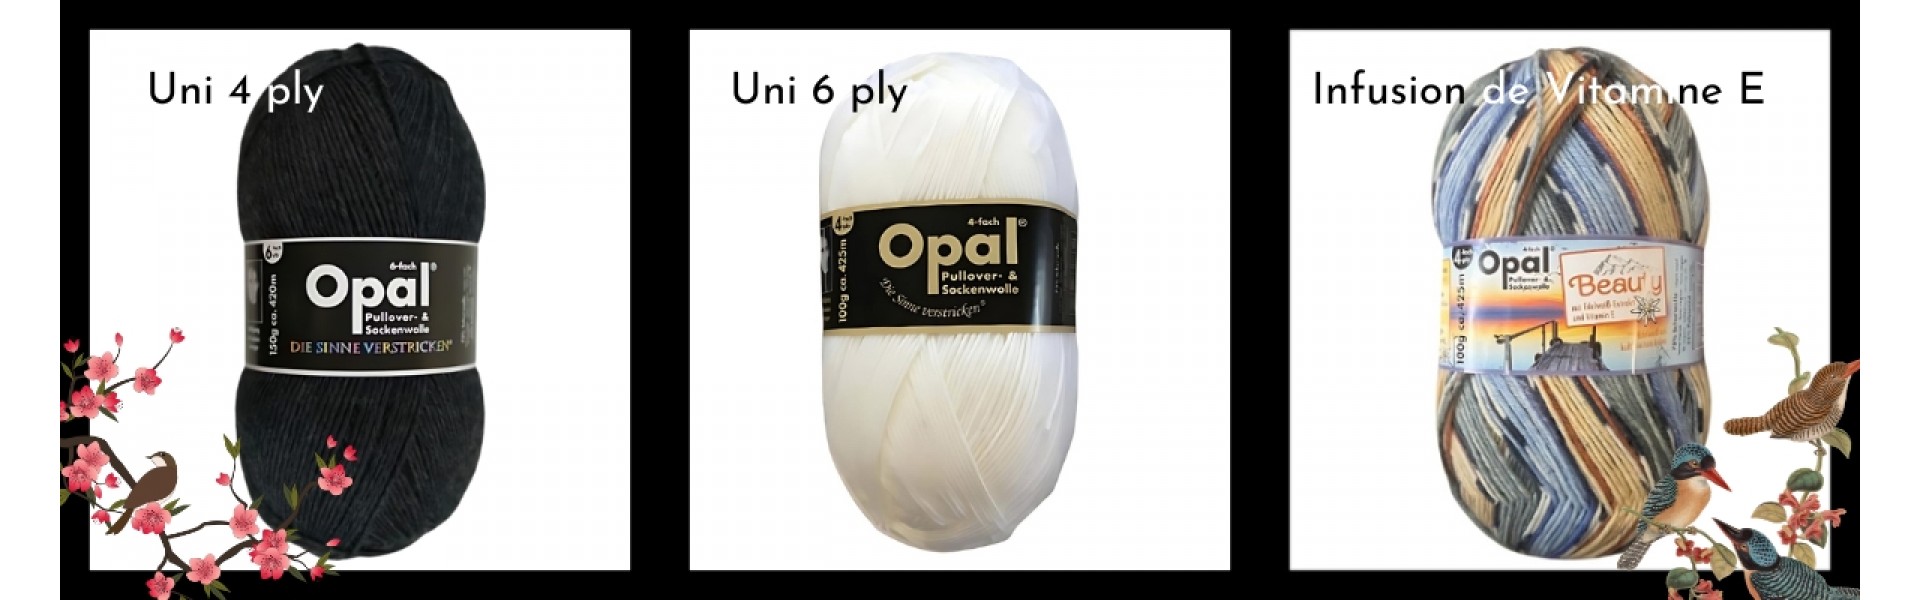 Opal Uni